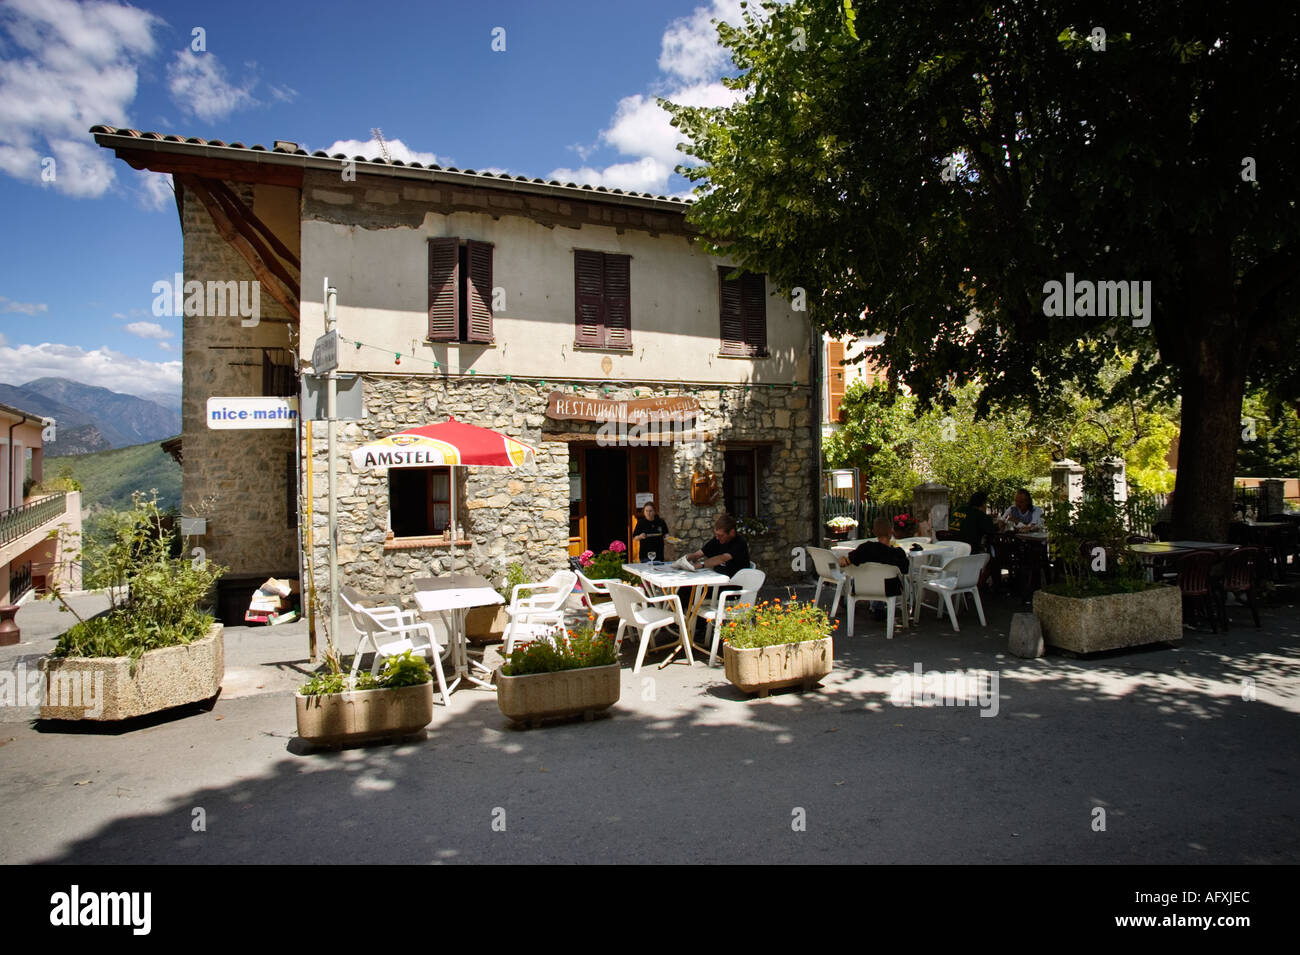 Restaurant Cafe bar sur la place du village à clans dans les Alpes Maritimes, Provence, France Banque D'Images